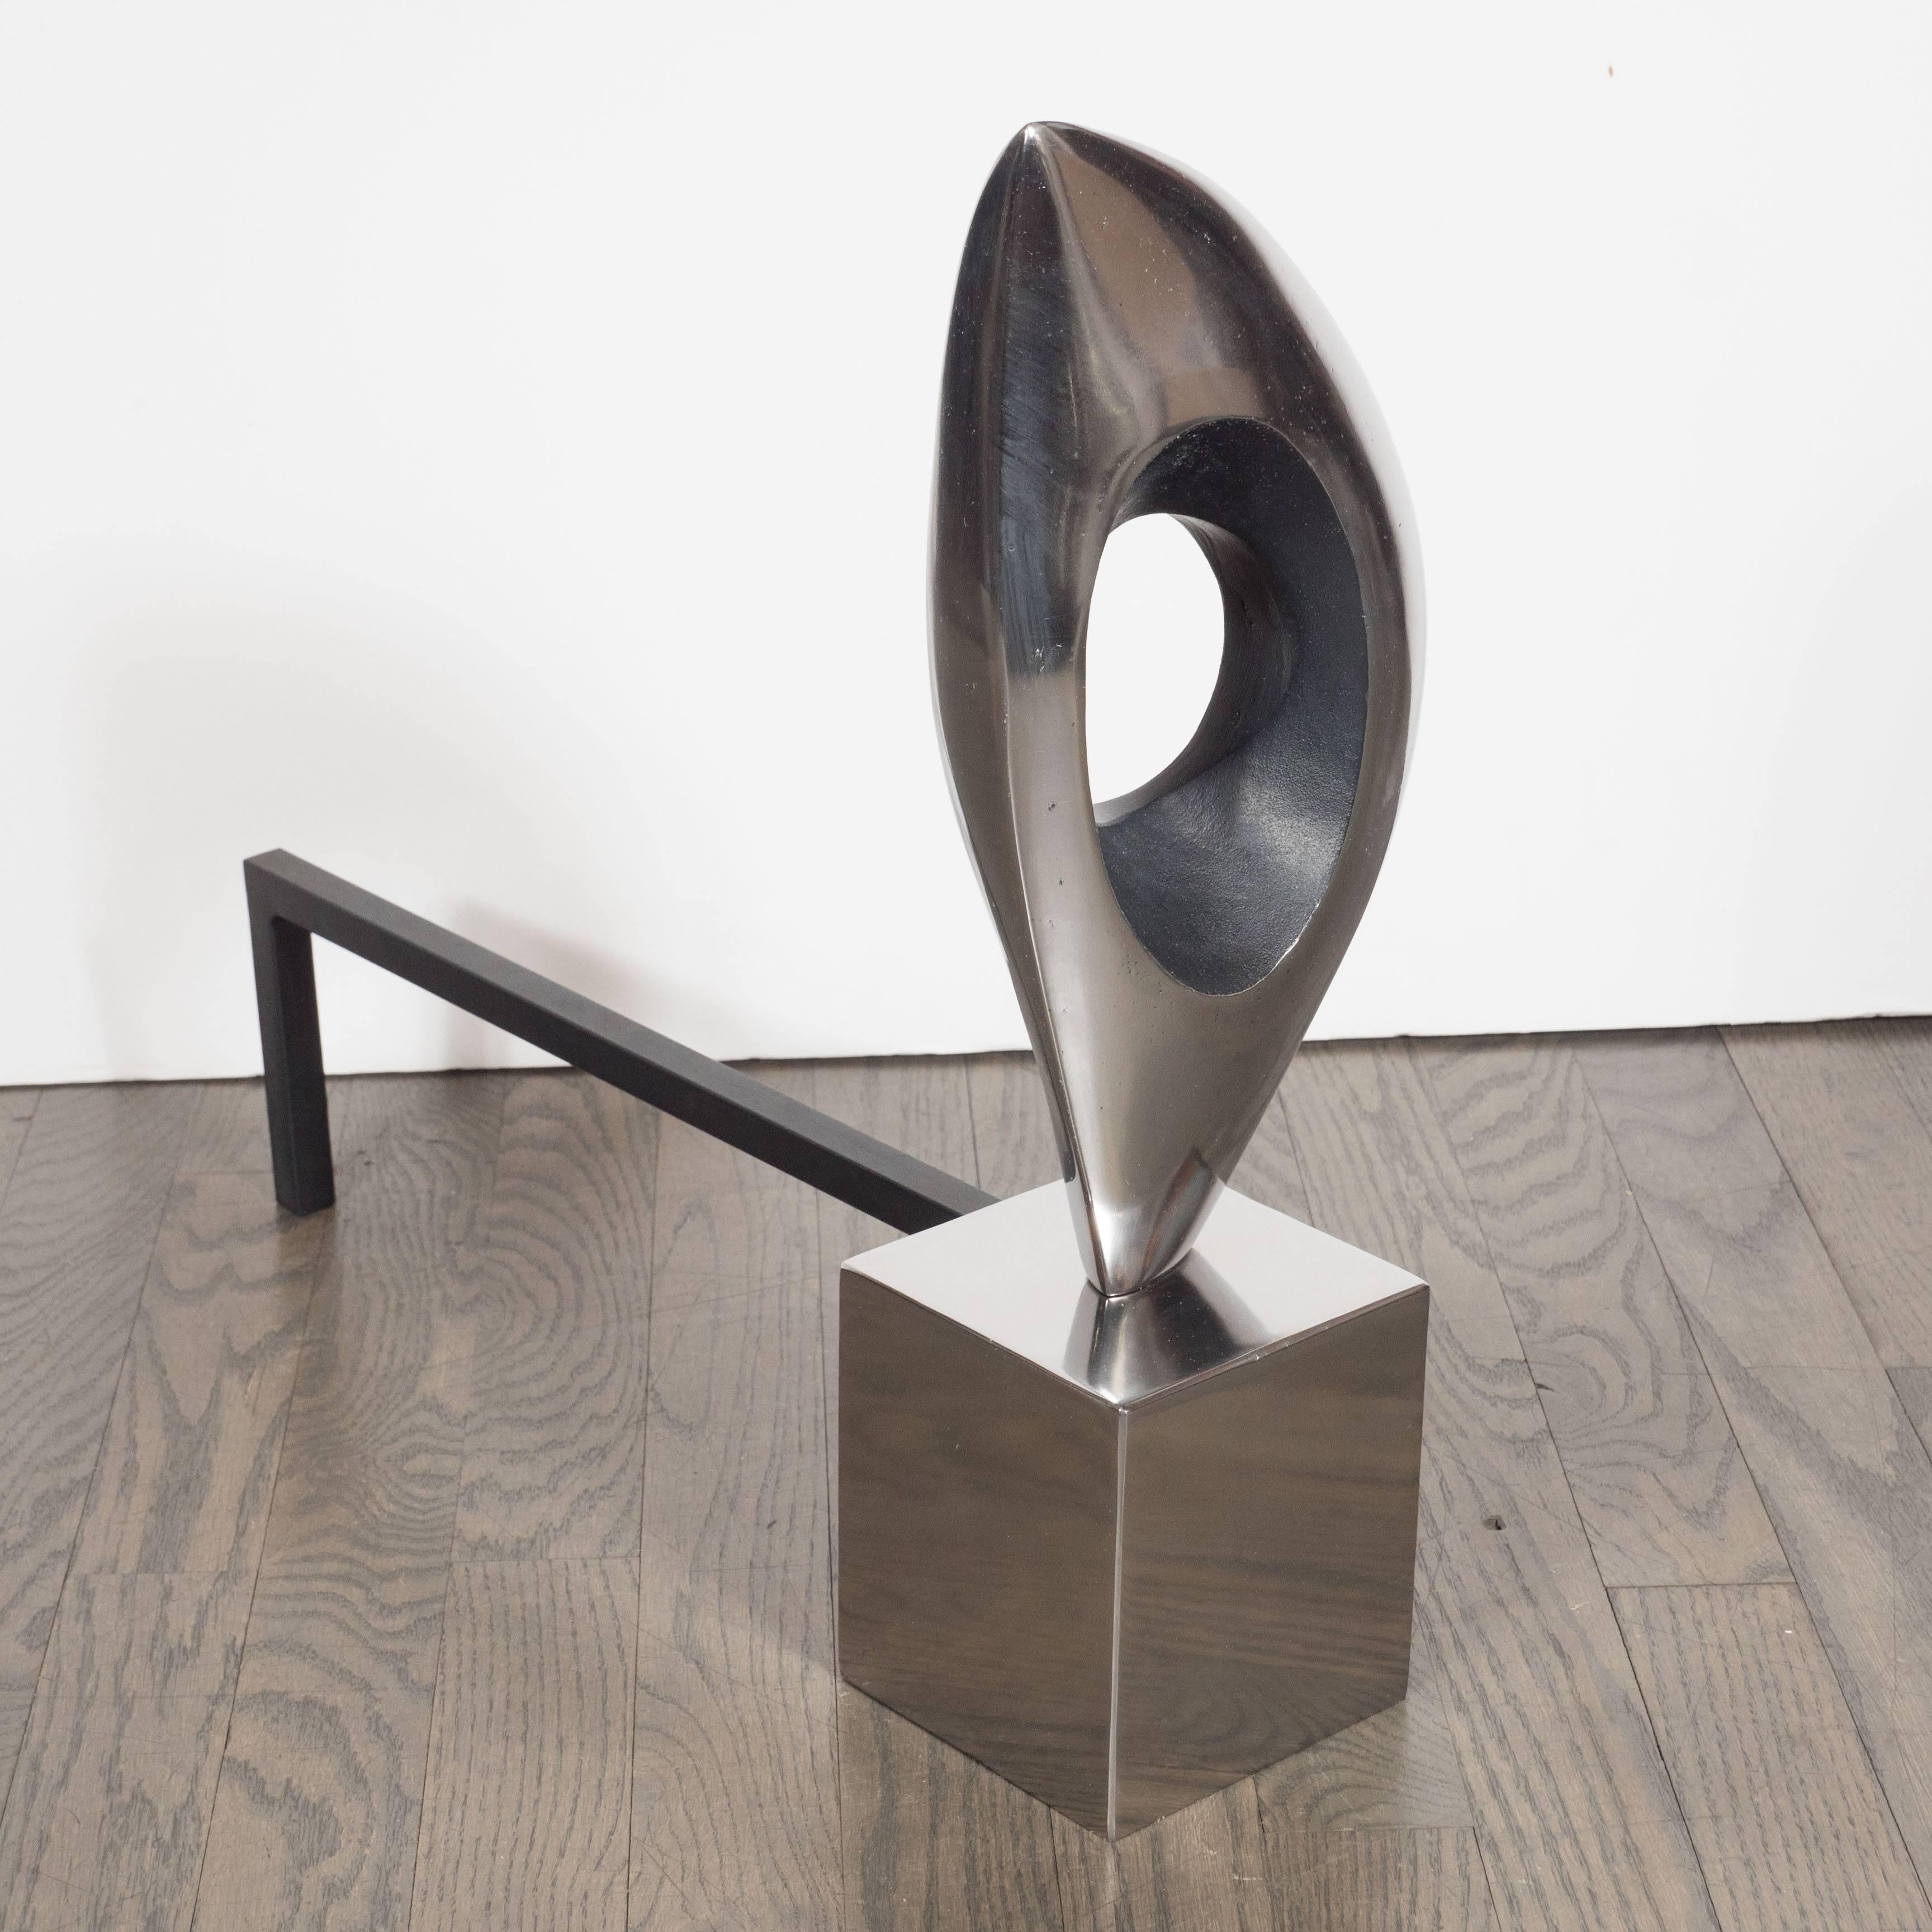 Pair of Organic Modernist Sculptural Andirons in Nickel & Black Enamel 1